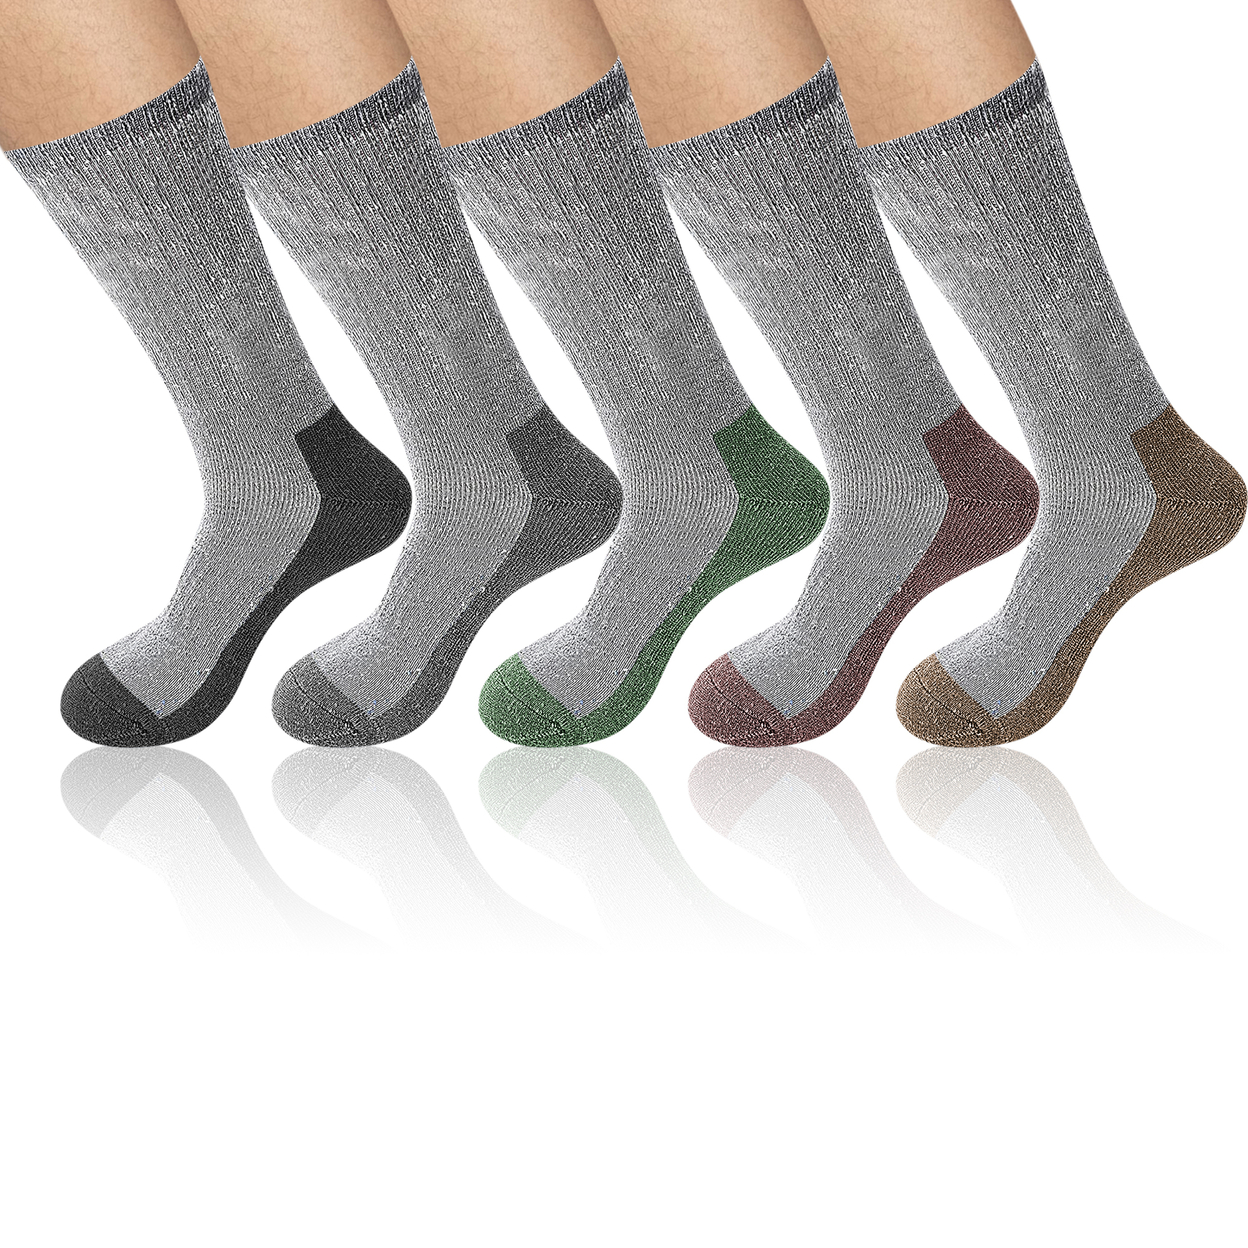 5-Pairs: Men's Warm Thick Merino Lamb Wool Socks